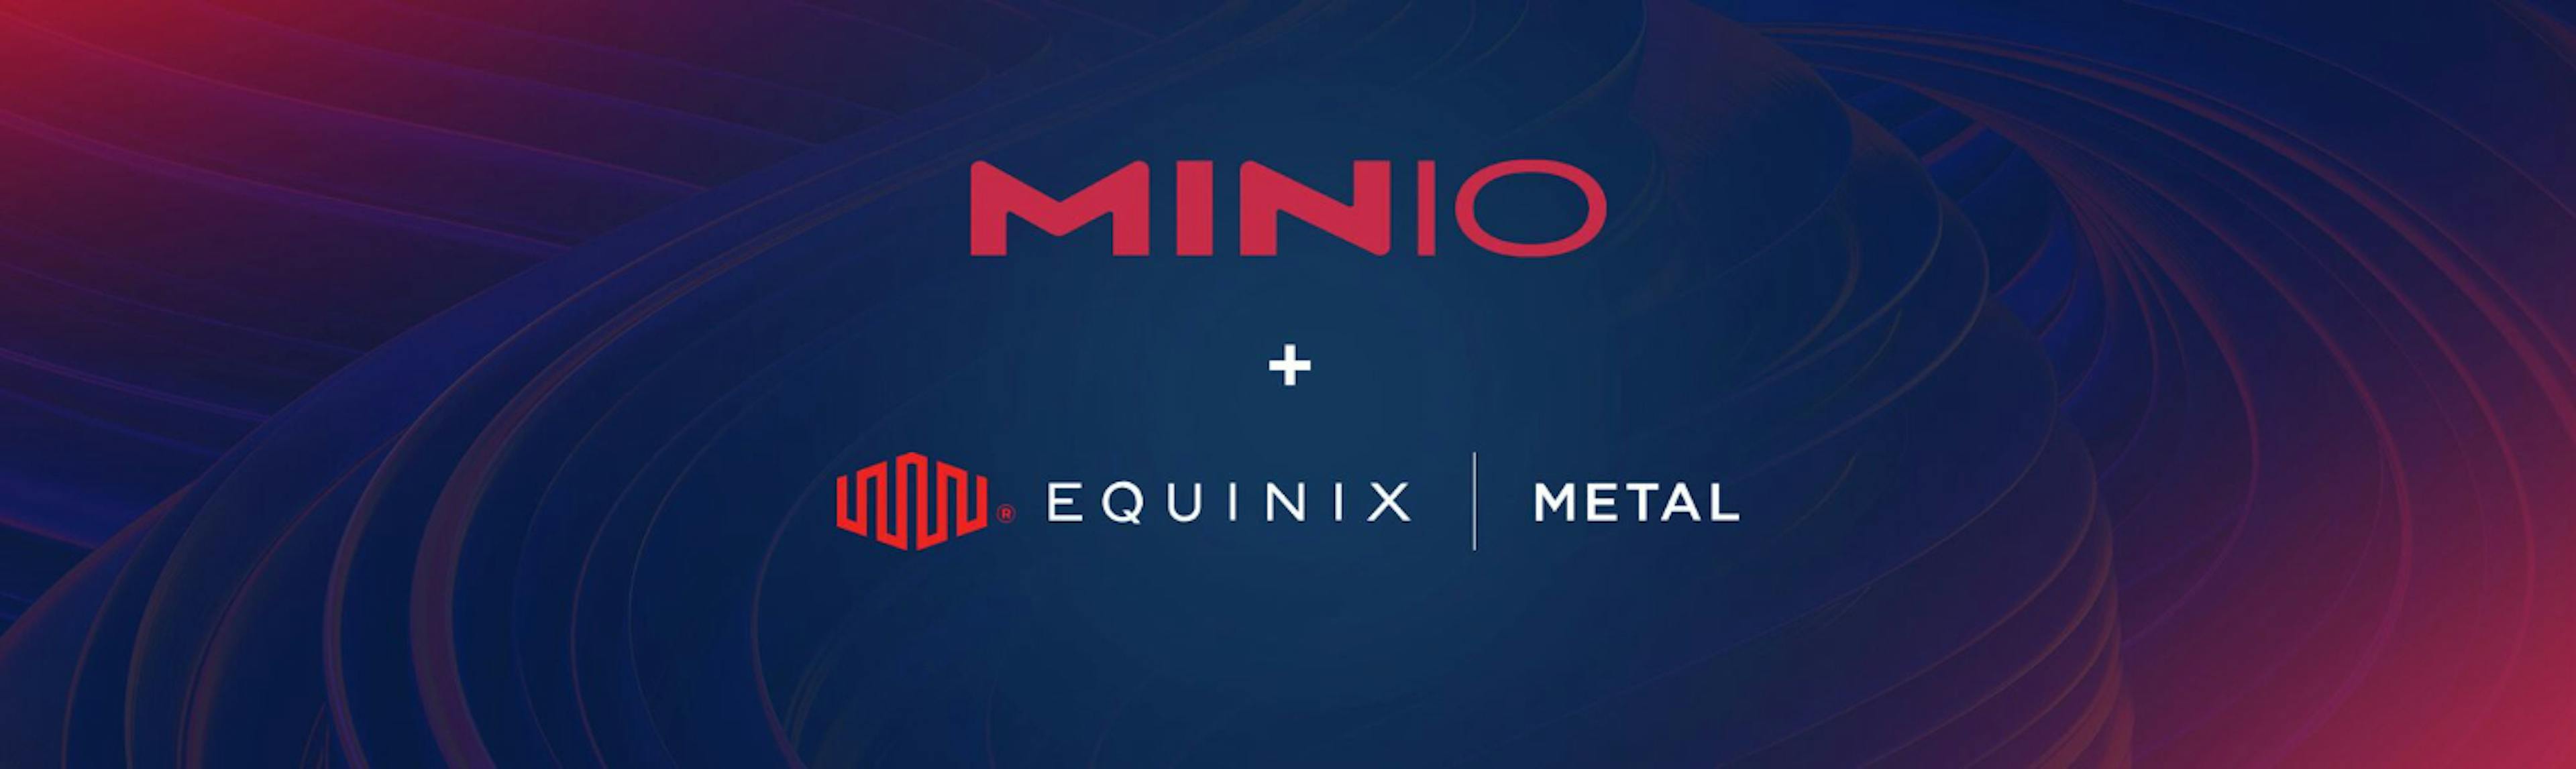 featured image - Comment migrer d'AWS S3 vers MinIO sur Equinix Metal